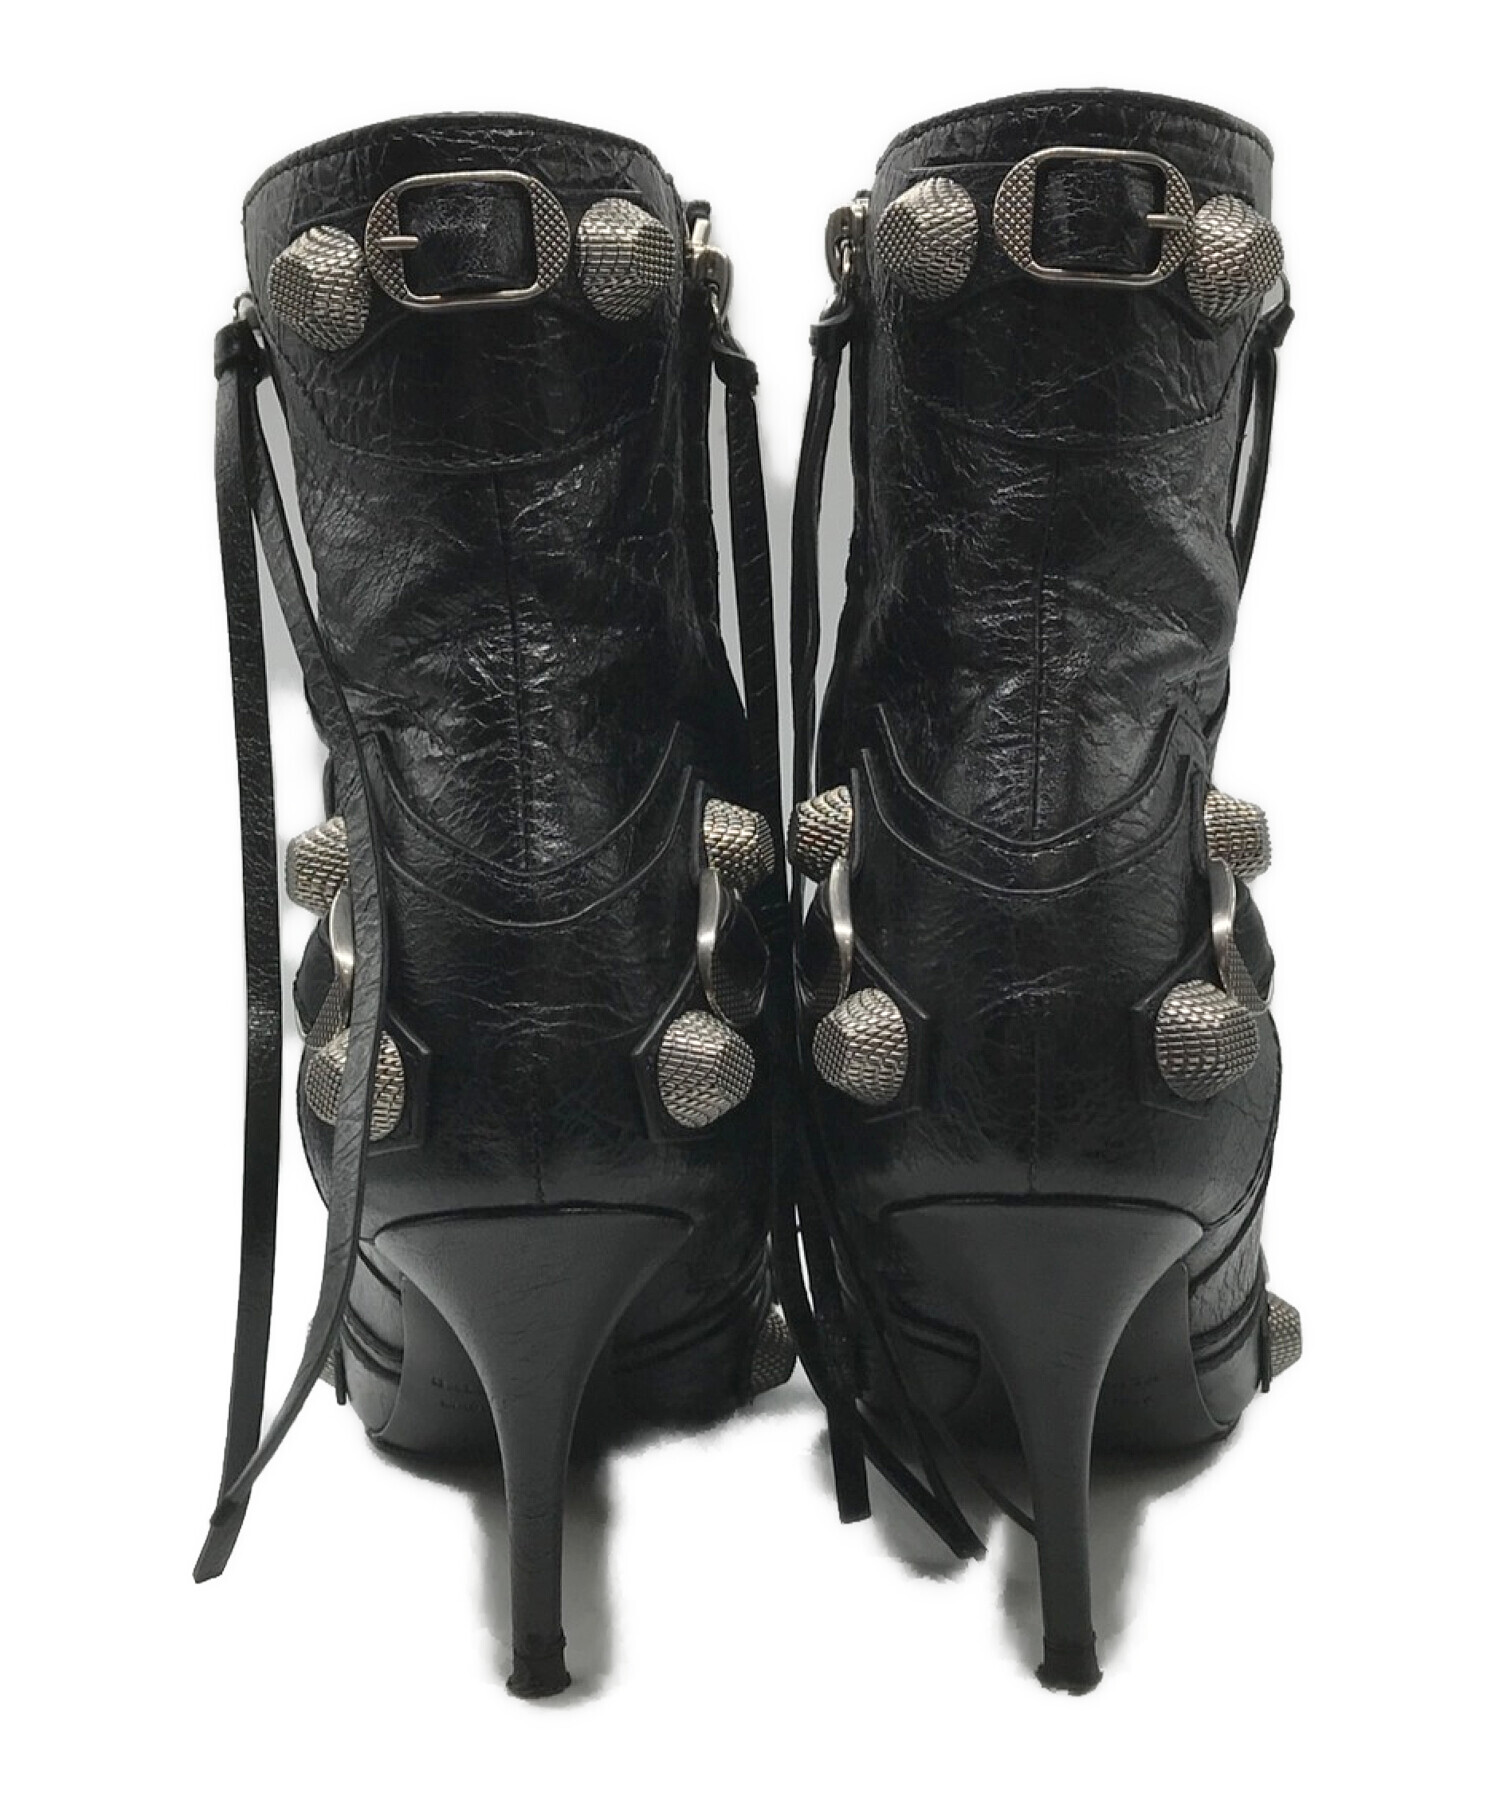 BALENCIAGA (バレンシアガ) Cagole 90 Ankle Boots スタッズアンクルブーツ ブラック サイズ:37